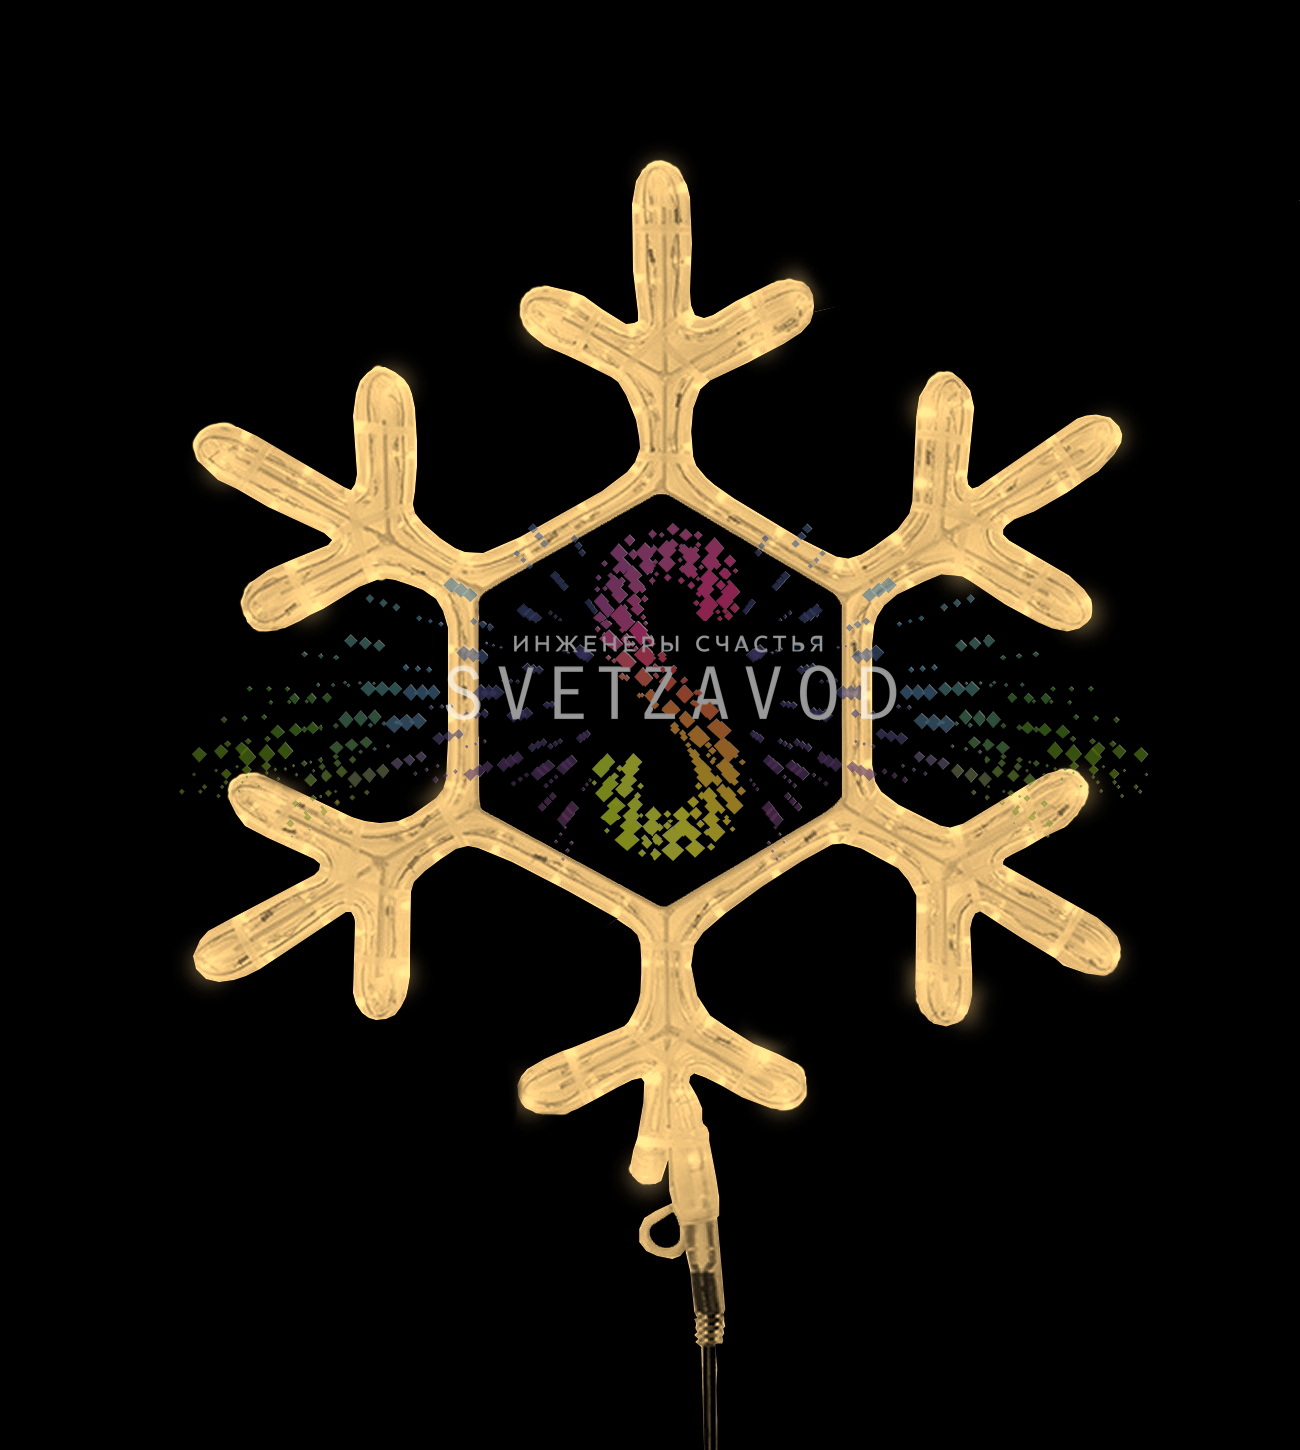 Светодиодная Снежинка, 45х38 см, теплая белая, фиксинг, 220В, IP65, Neon-Night